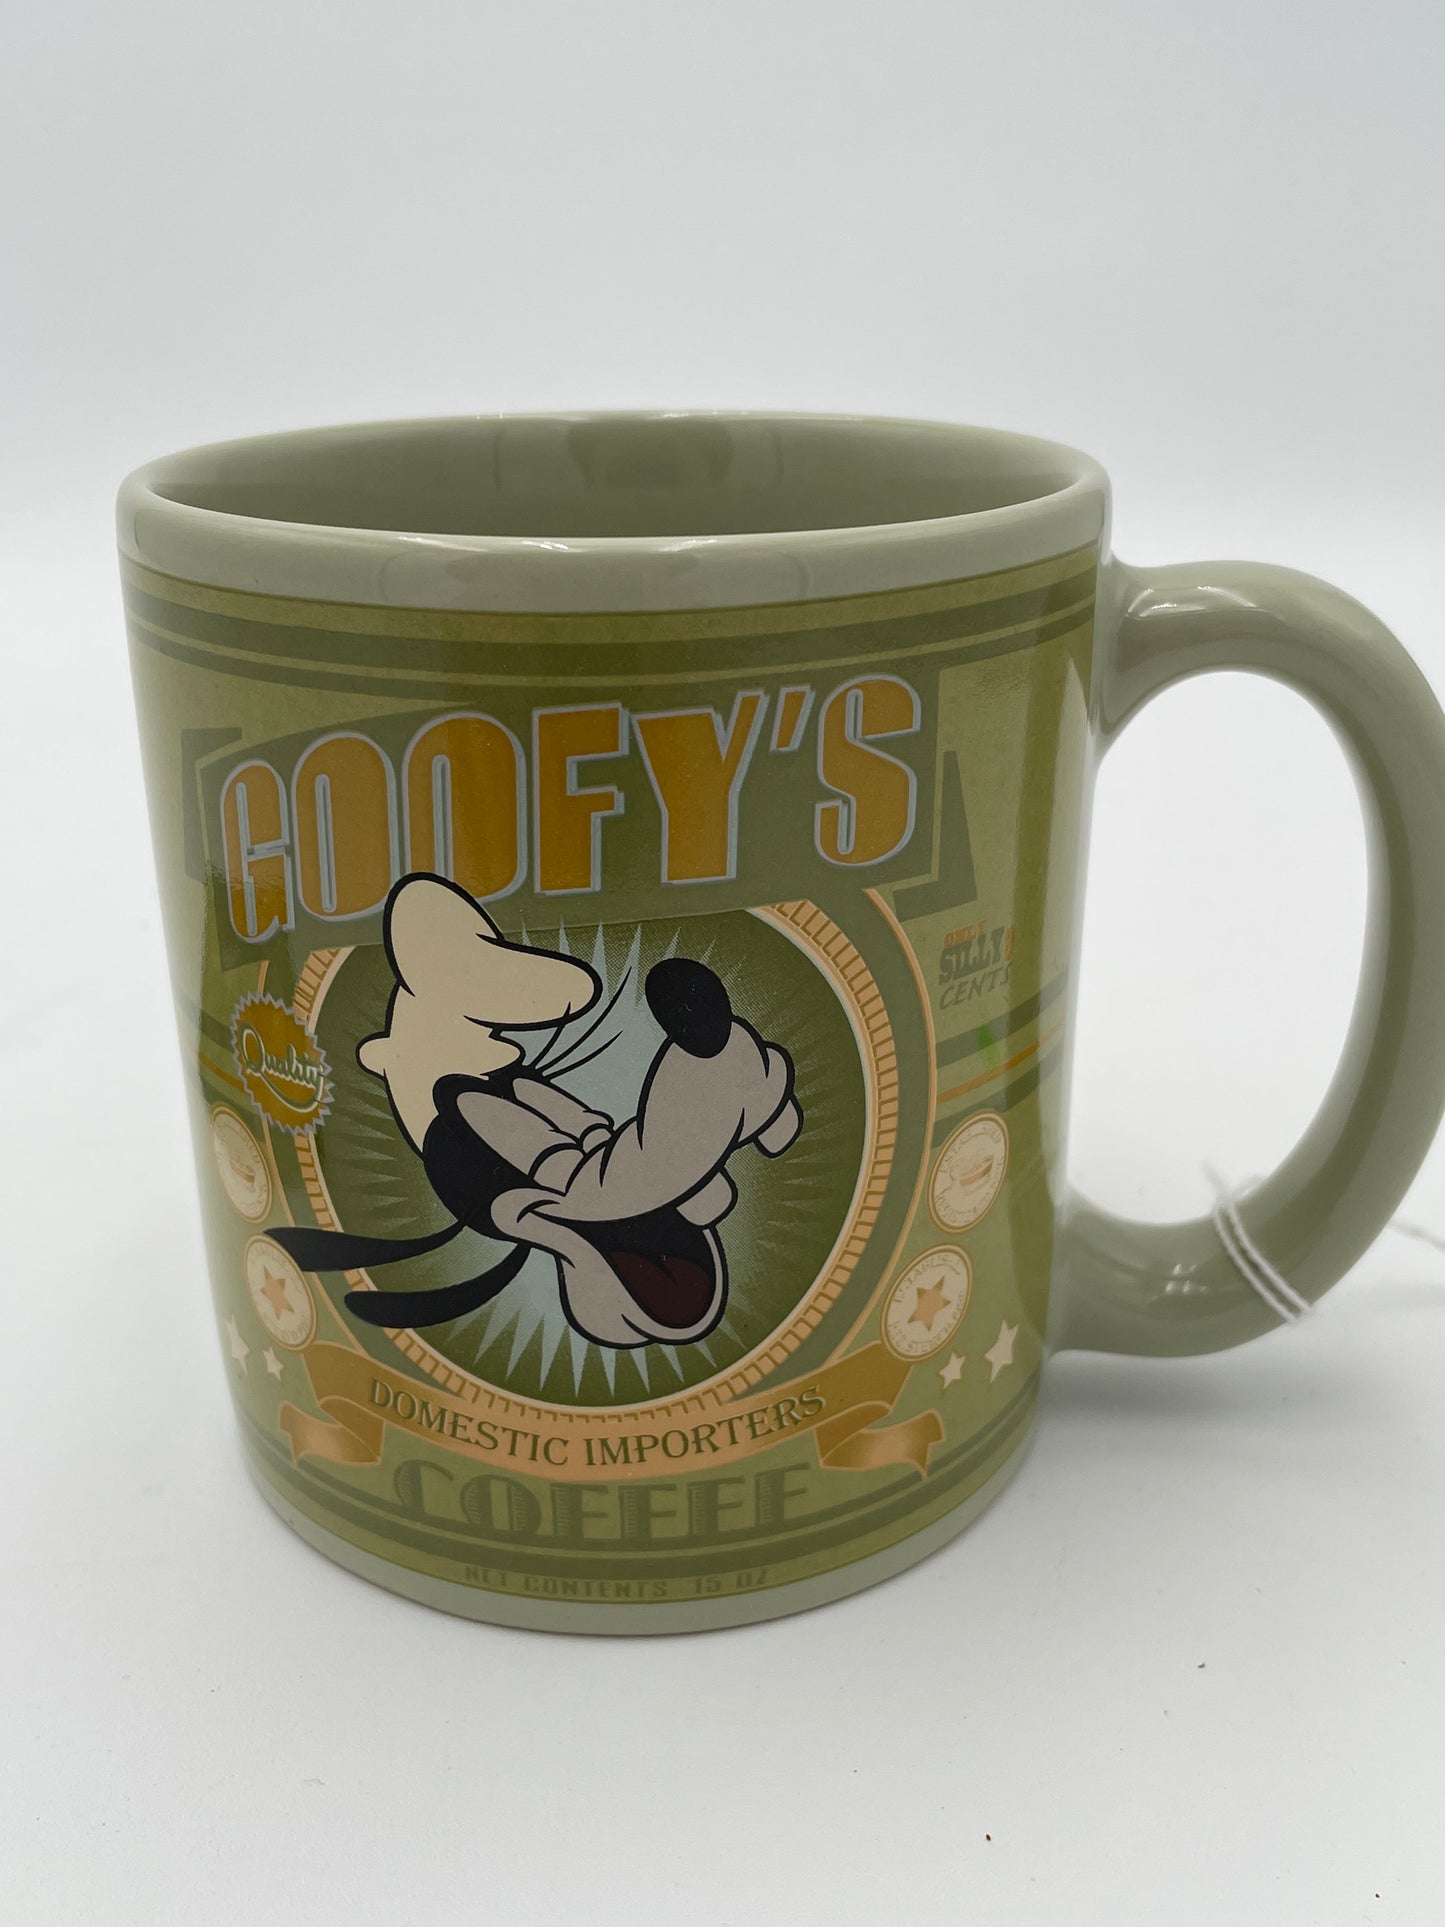 Disney - Goofy “Domestic Import” Mug & Coaster Set #102718